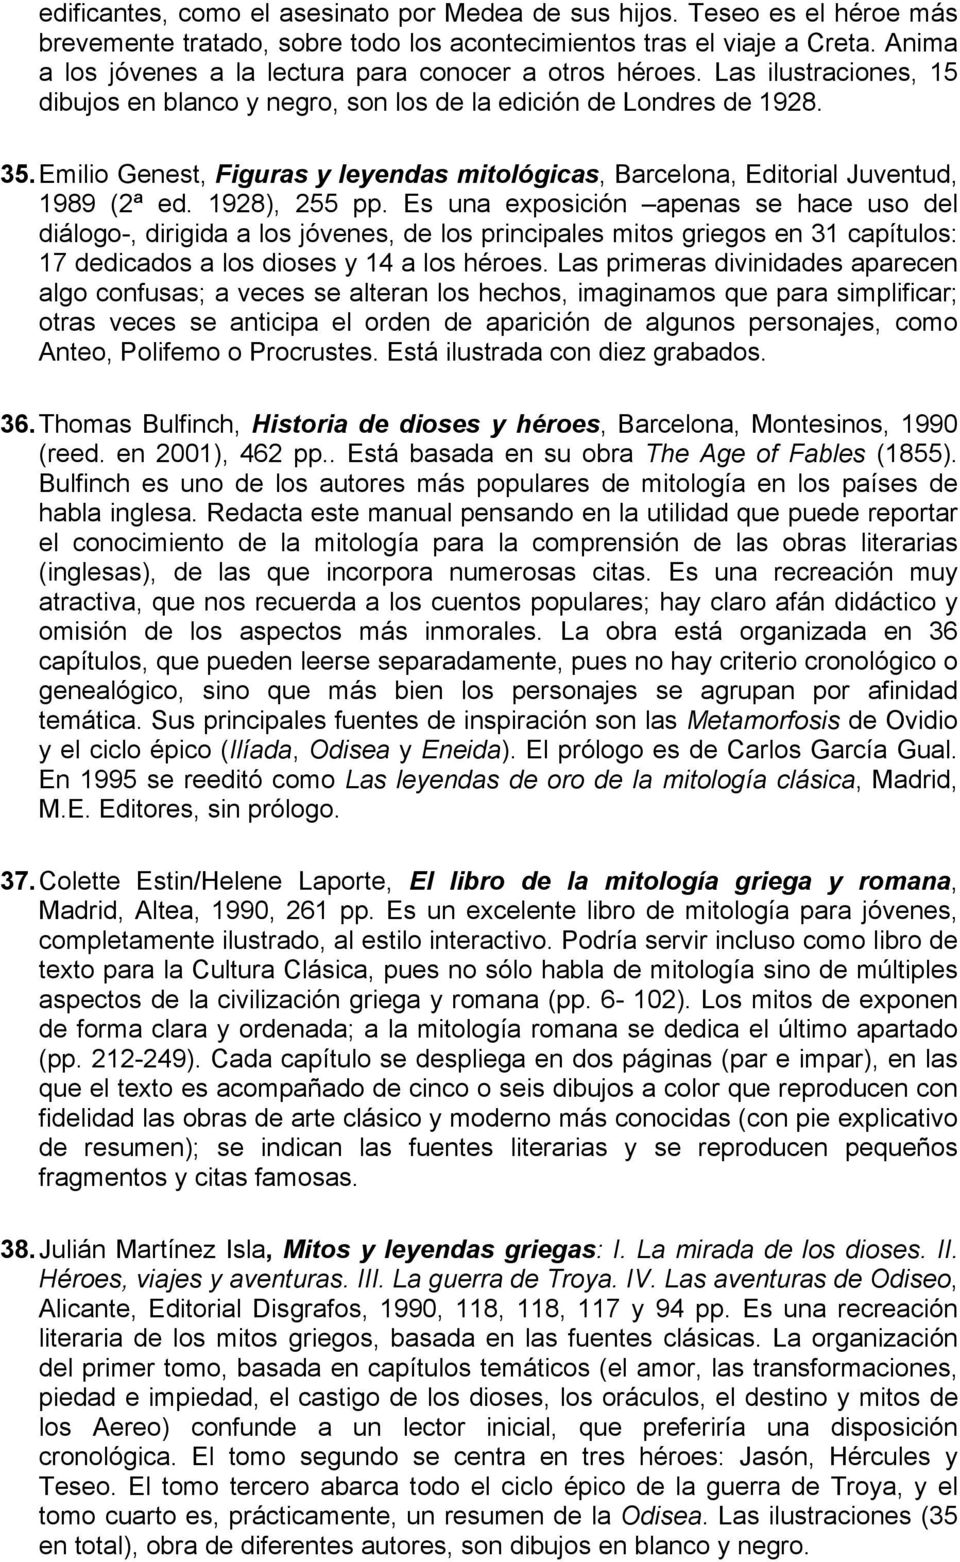 Emilio Genest, Figuras y leyendas mitológicas, Barcelona, Editorial Juventud, 1989 (2ª ed. 1928), 255 pp.